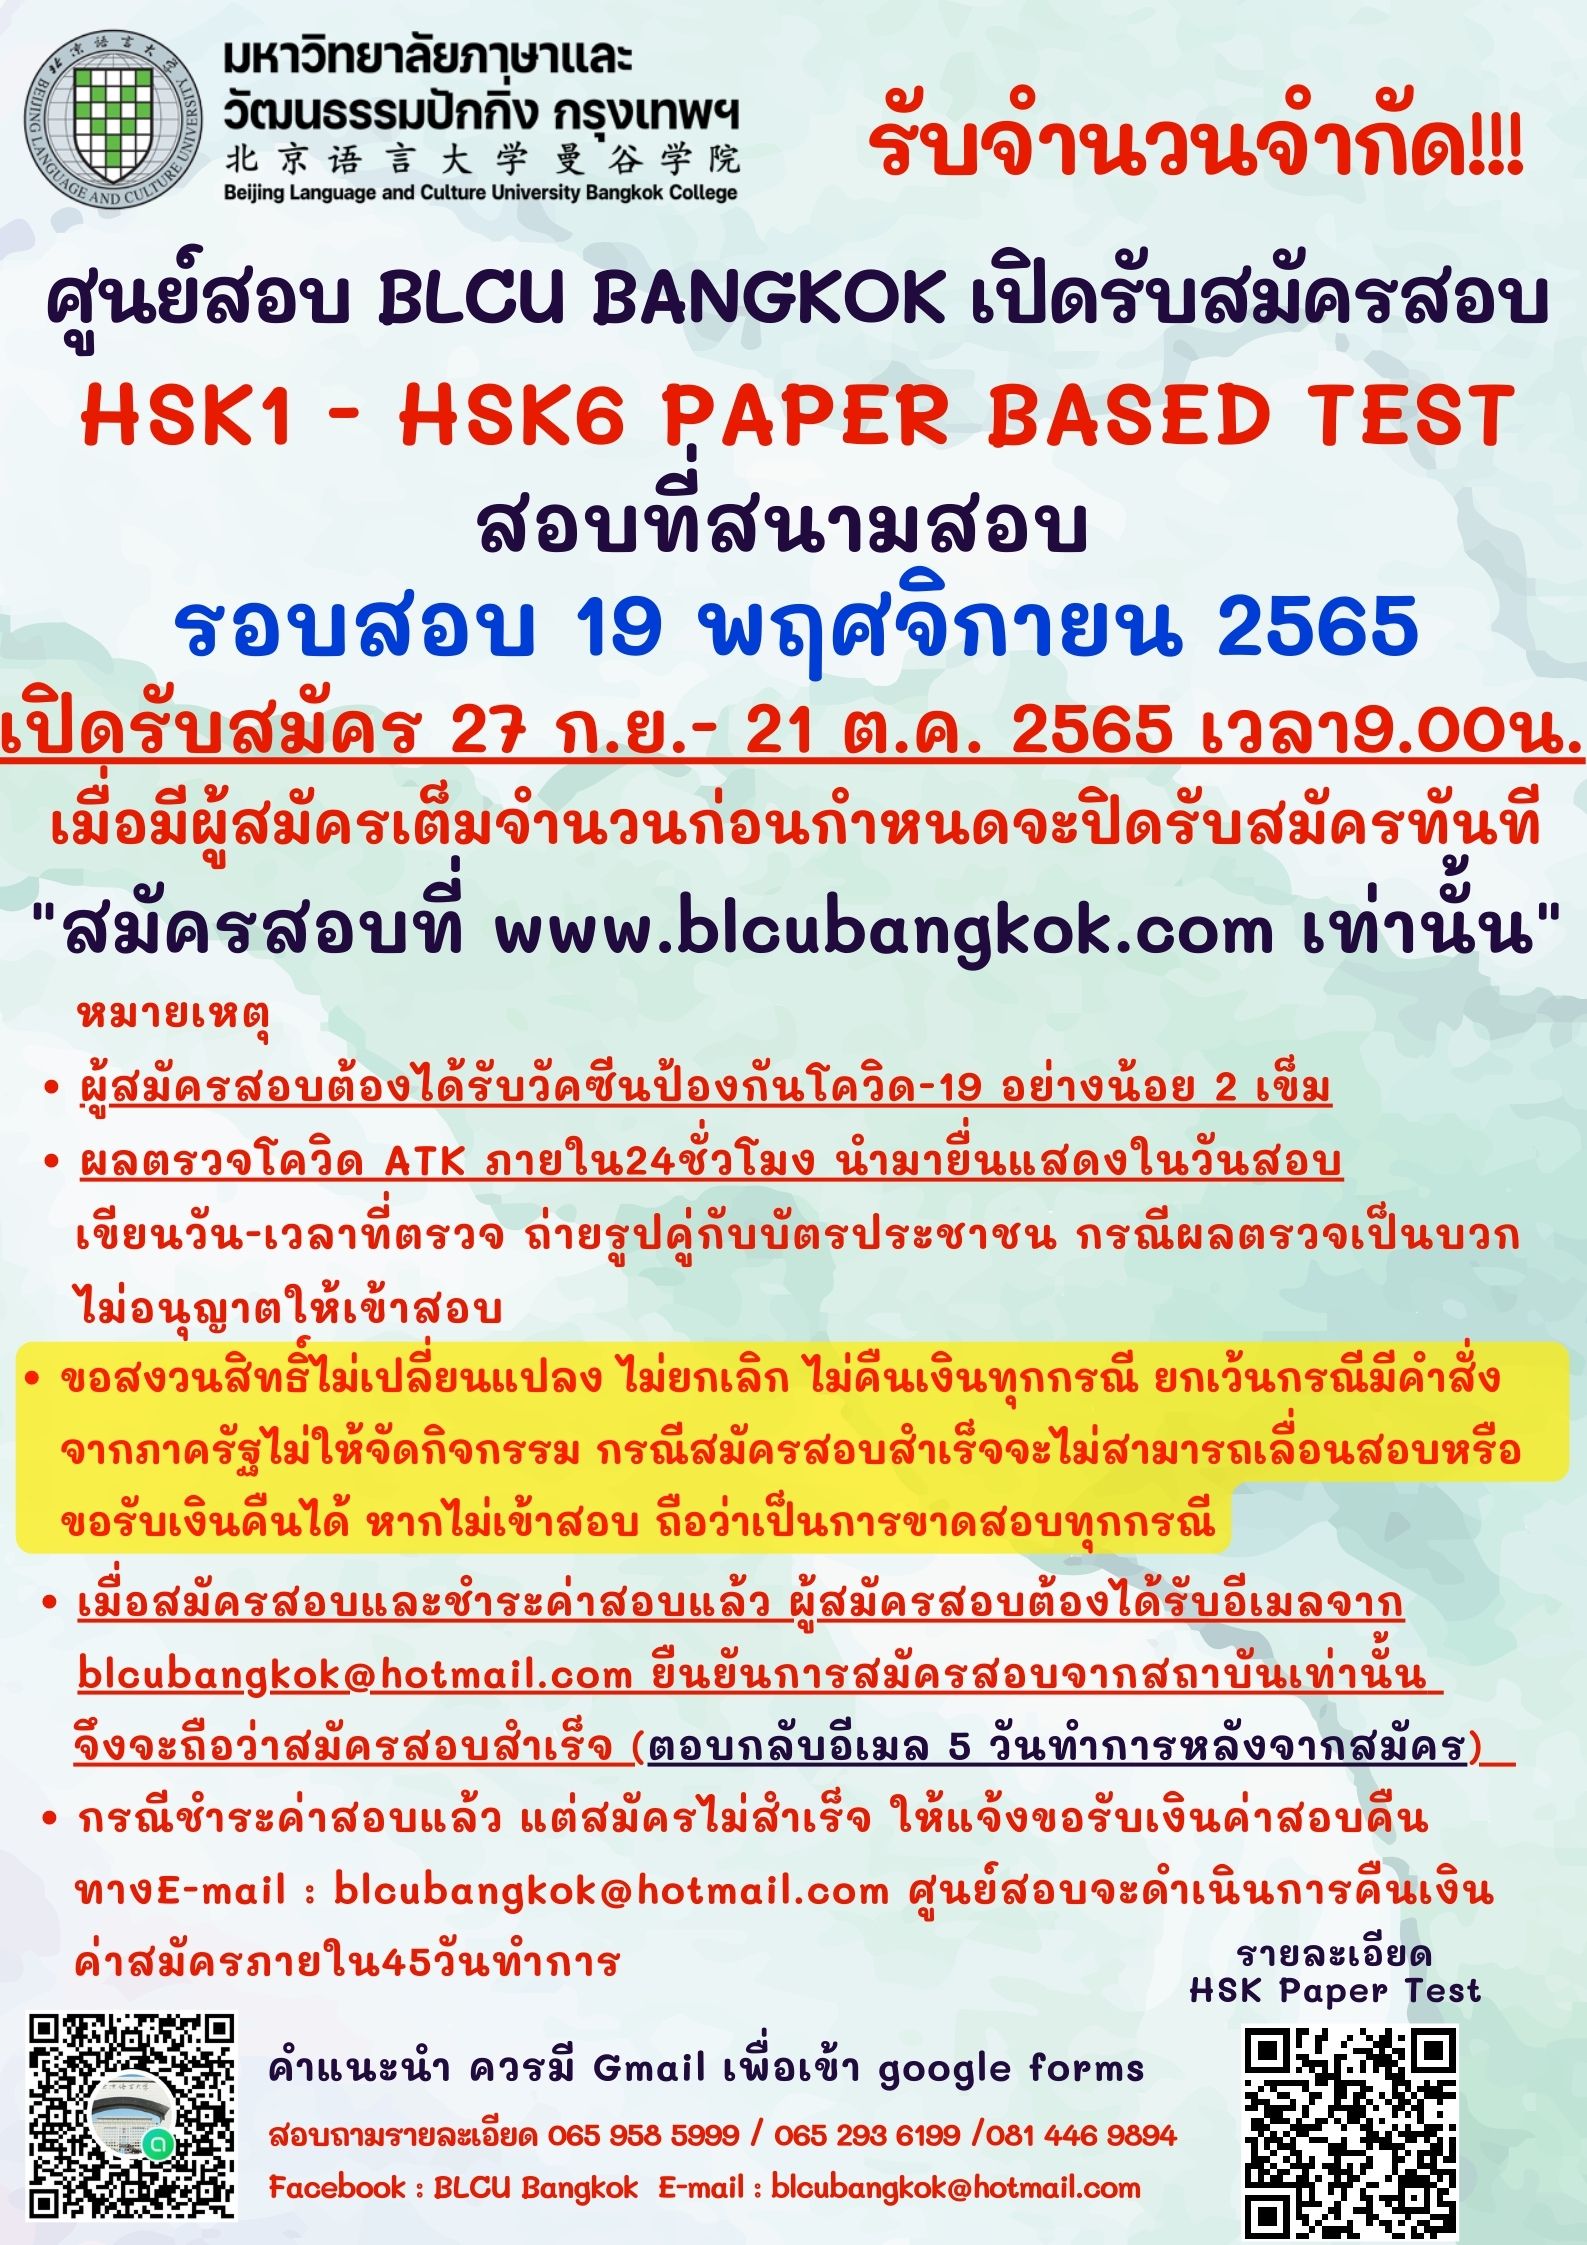 กำหนดวันสอบ HSK ครั้งที่ 10 ประจำปี 2565 วันเสาร์ที่ 19 พฤศจิกายน 2565 (Paper based test สอบที่สนามสอบ)